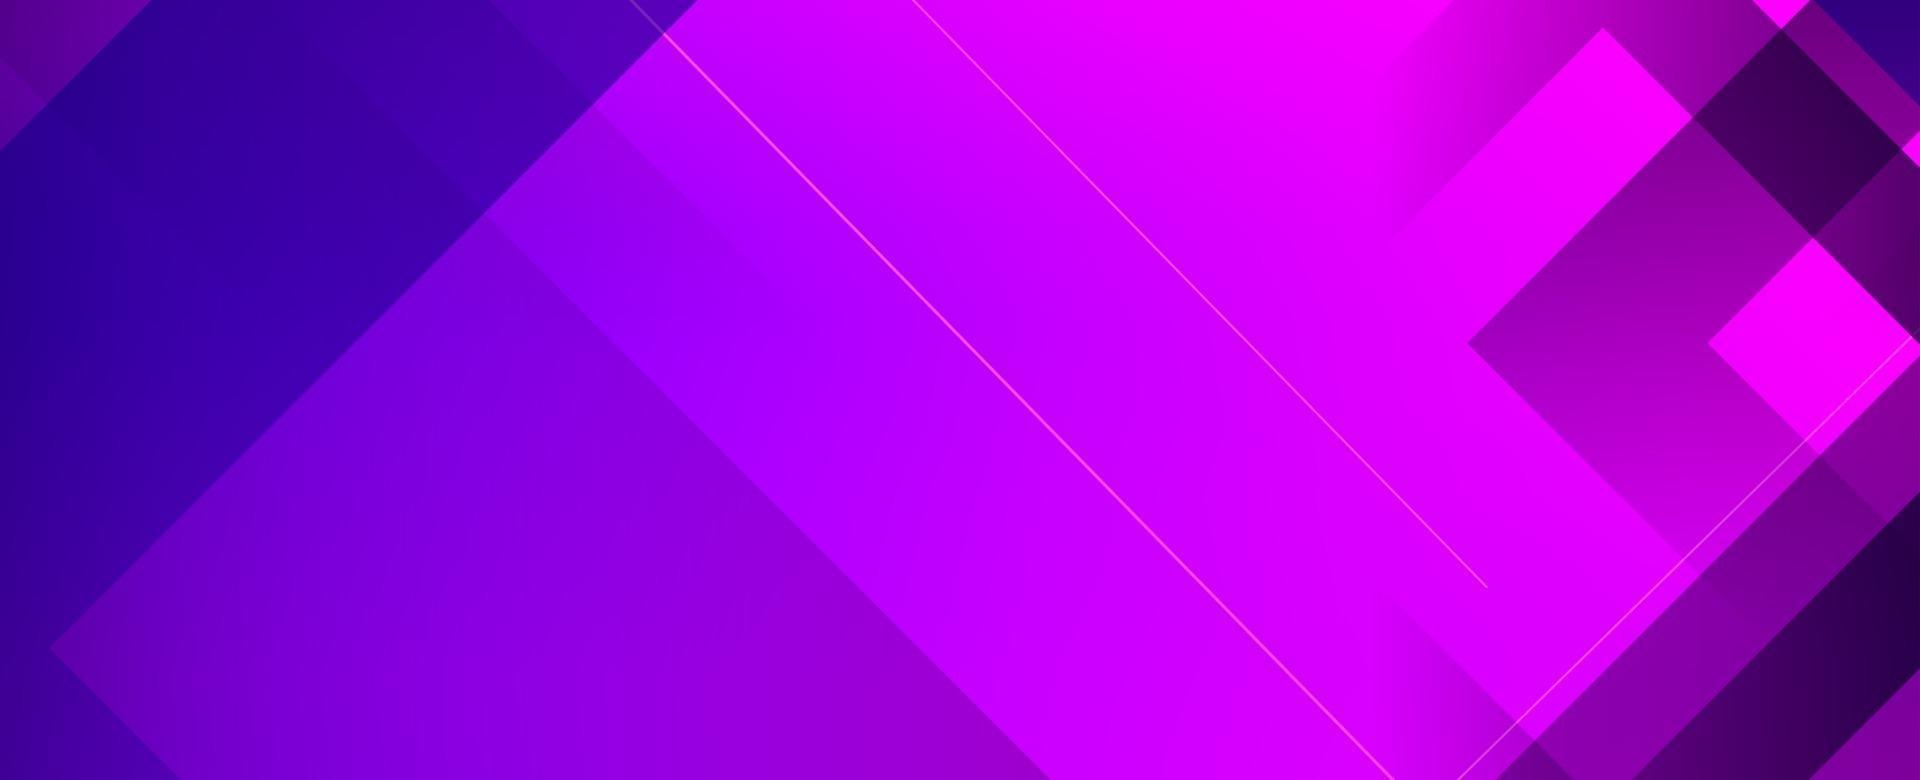 astratto geometrico viola moderno elegante liscio sfondo scuro banner vettore